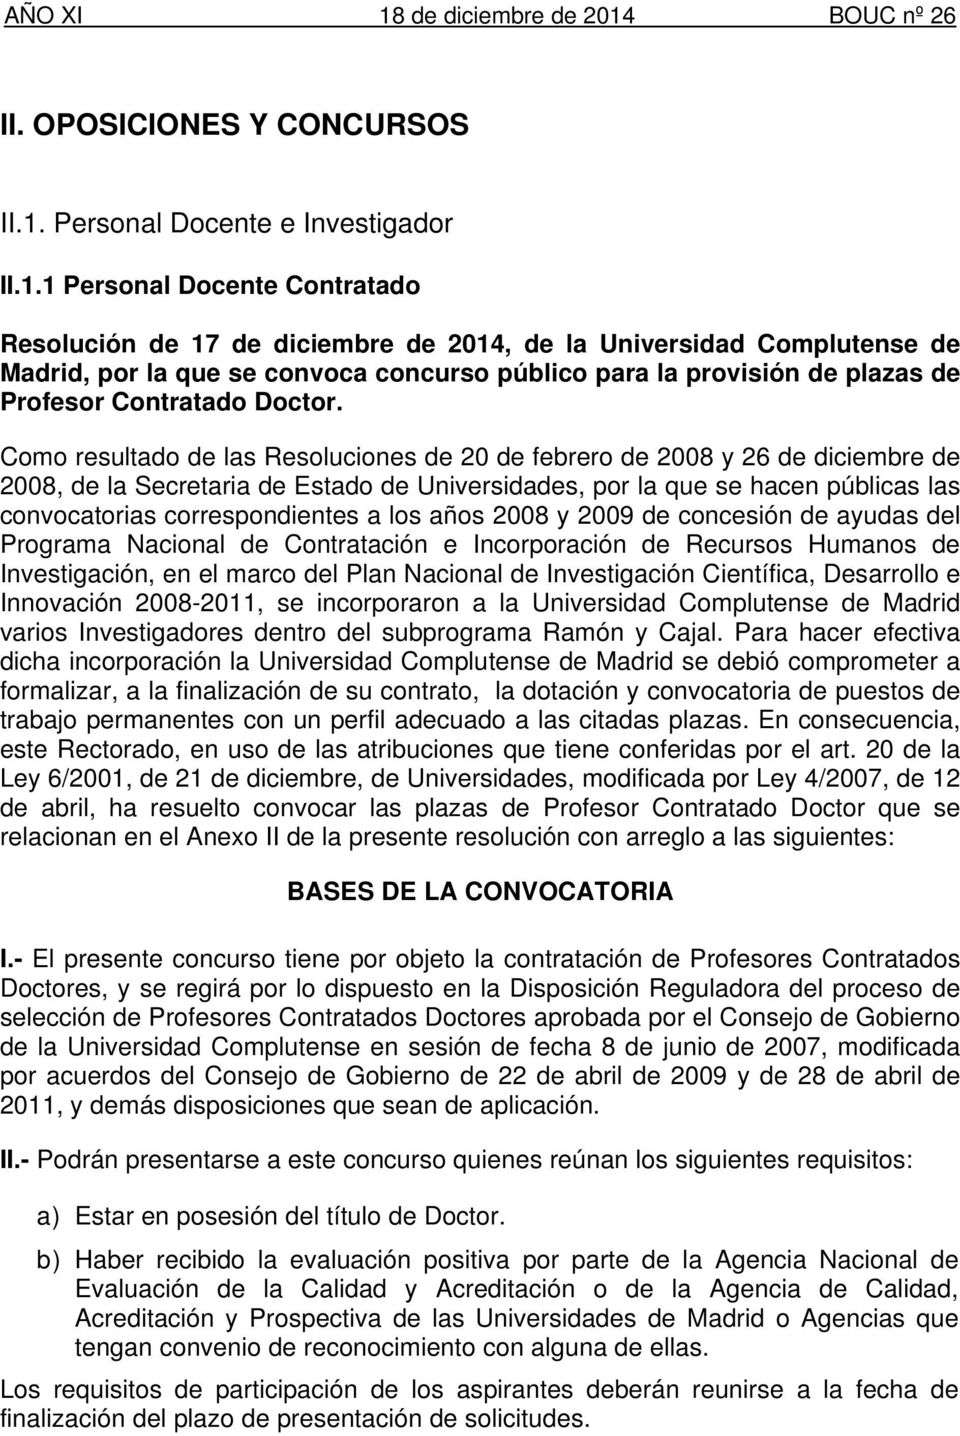 1 Personal Docente Contratado Resolución de 17 de diciembre de 2014, de la Universidad Complutense de Madrid, por la que se convoca concurso público para la provisión de plazas de Profesor Contratado